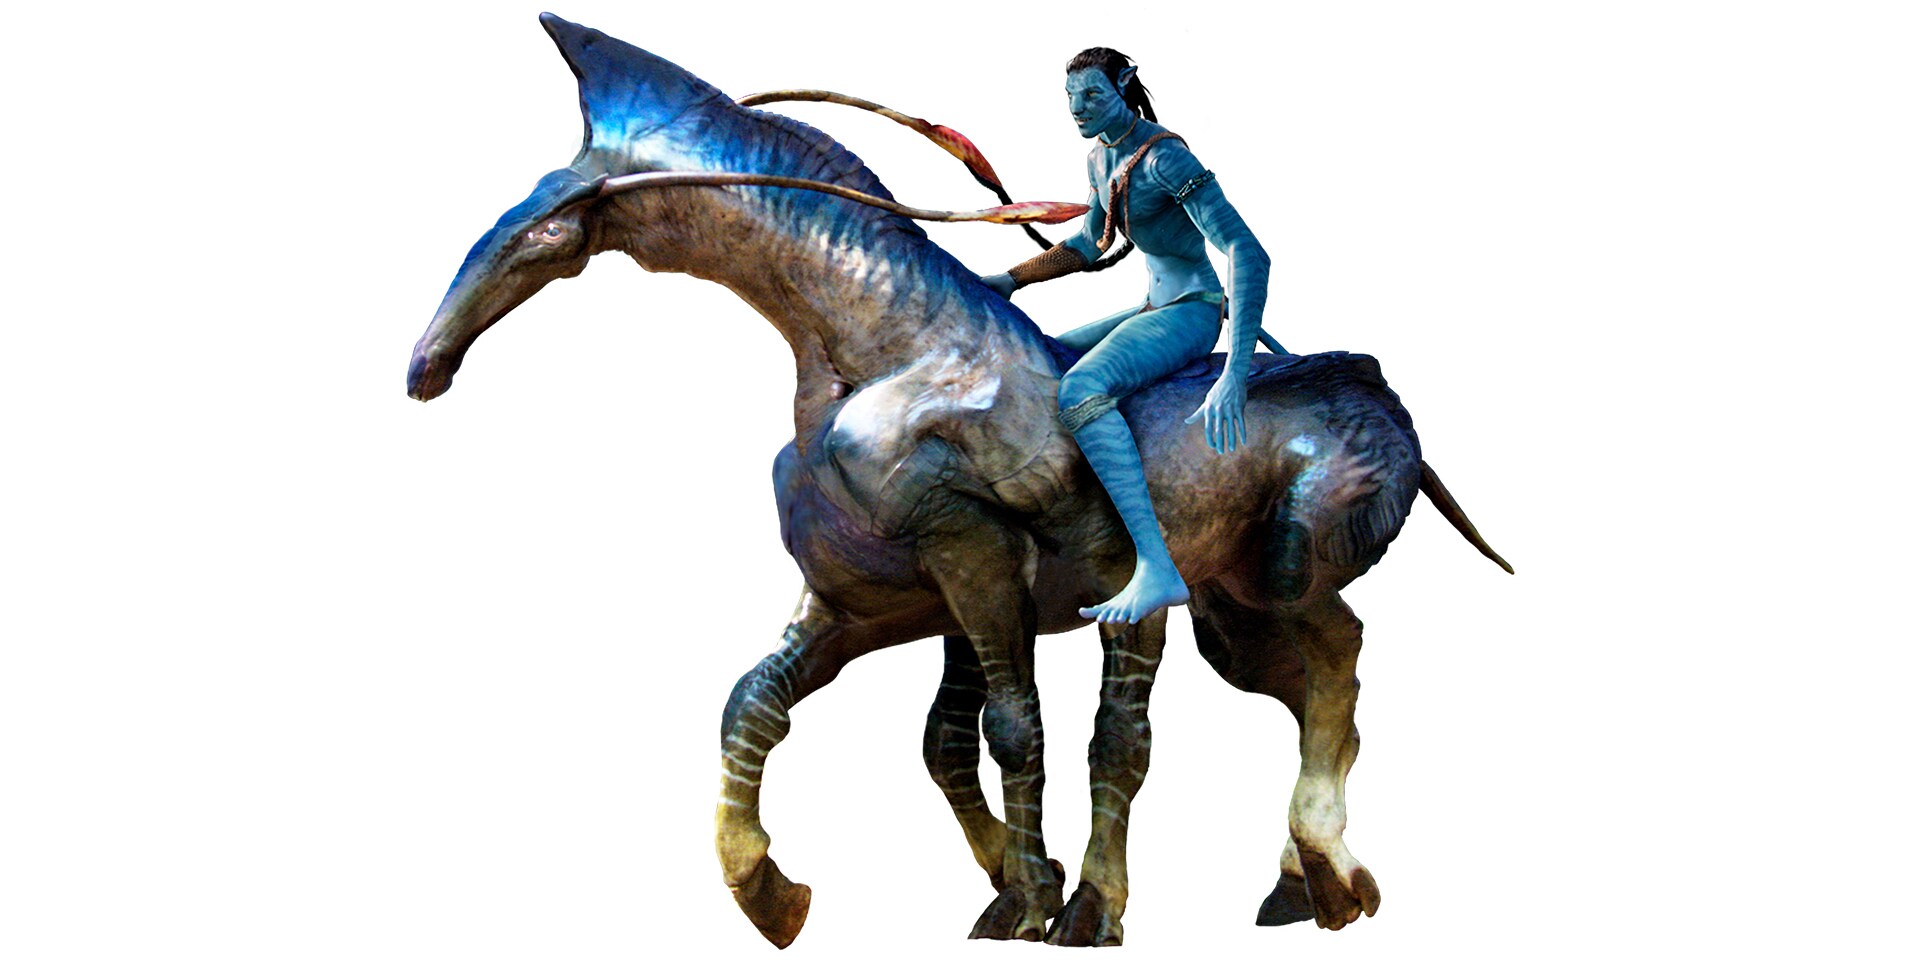 Ngựa Direhorse | Avatar.com:
Bạn đã từng ước mơ được bay trên một sinh vật hoang dã trong bộ phim Avatar? Tham gia trò chơi với những người hâm mộ trên Avatar.com và tìm hiểu về ngựa Direhorse. Bạn sẽ được khám phá một thế giới mới đầy ma thuật và kỳ diệu. Hãy sẵn sàng để đắm chìm vào trò chơi đầy hứng khởi này!